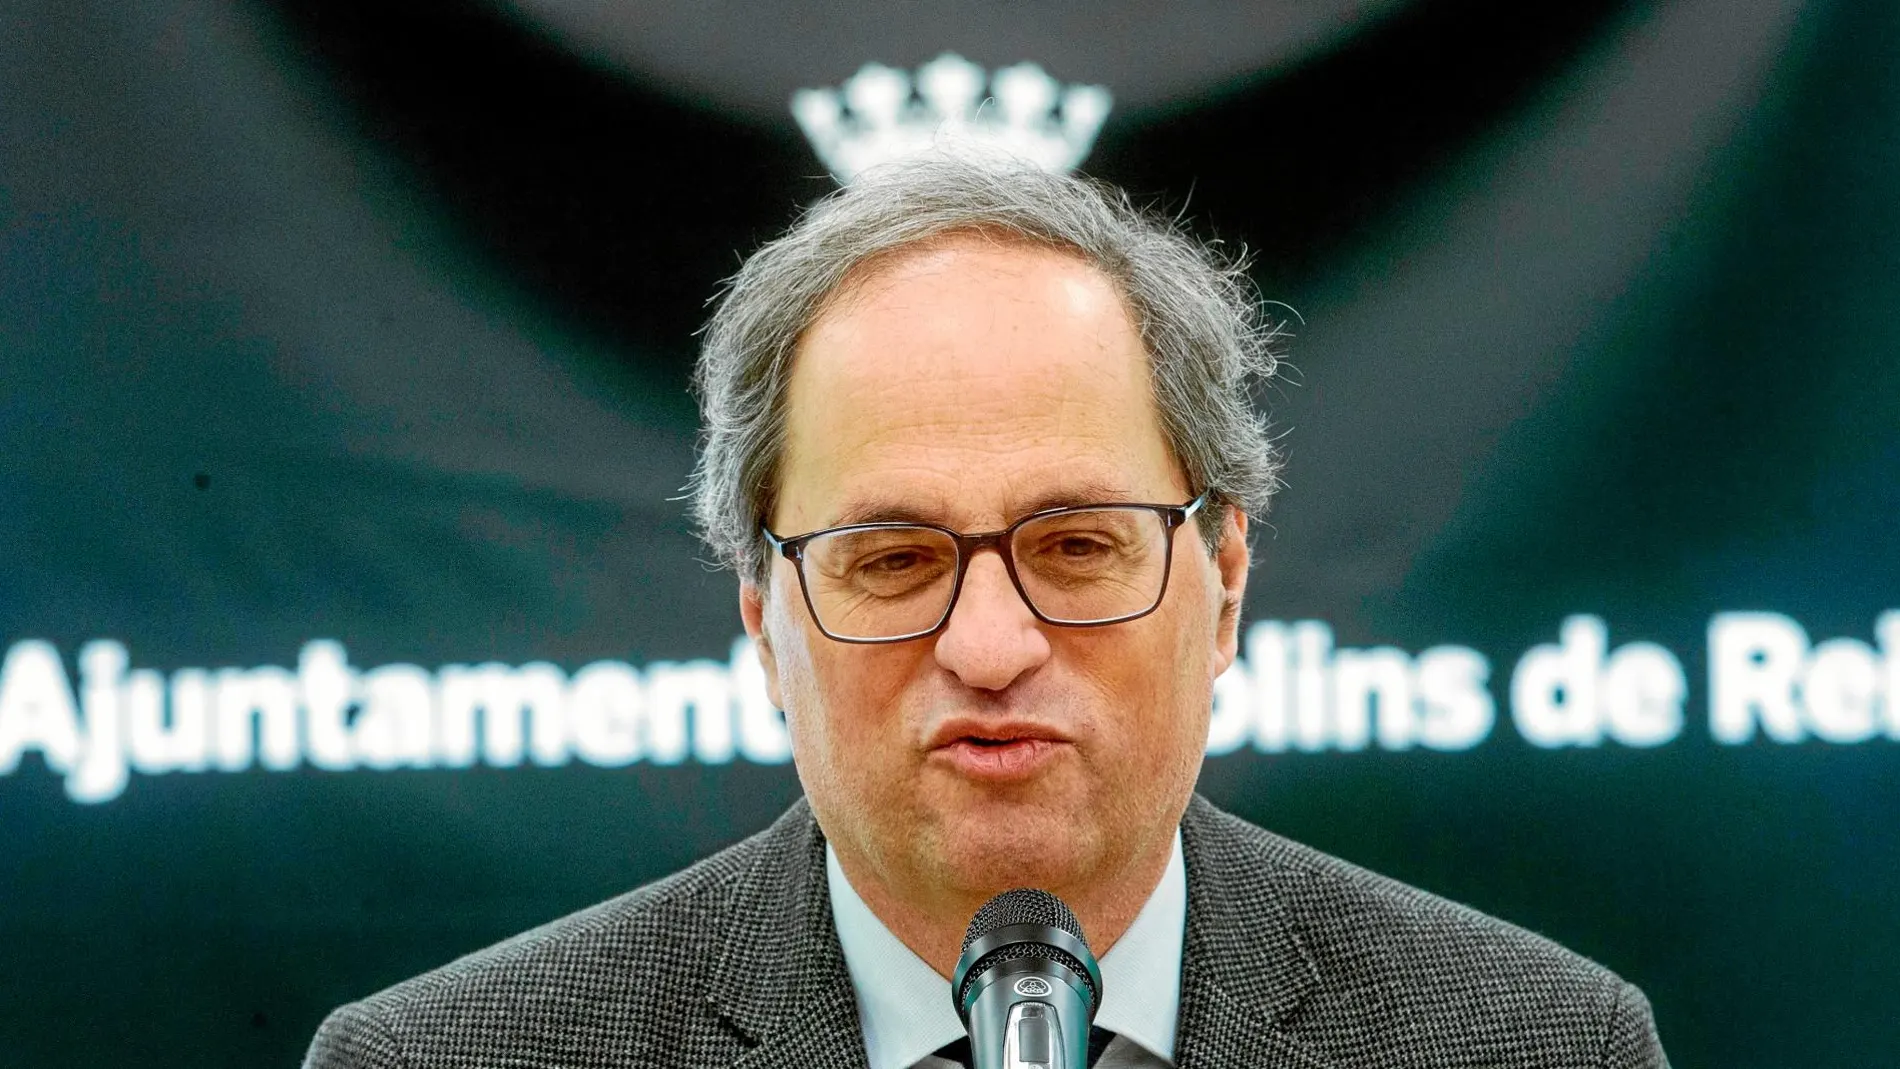 El president de la Generalitat anunció que acudirá al Supremo para ser el «altavoz» de los presos